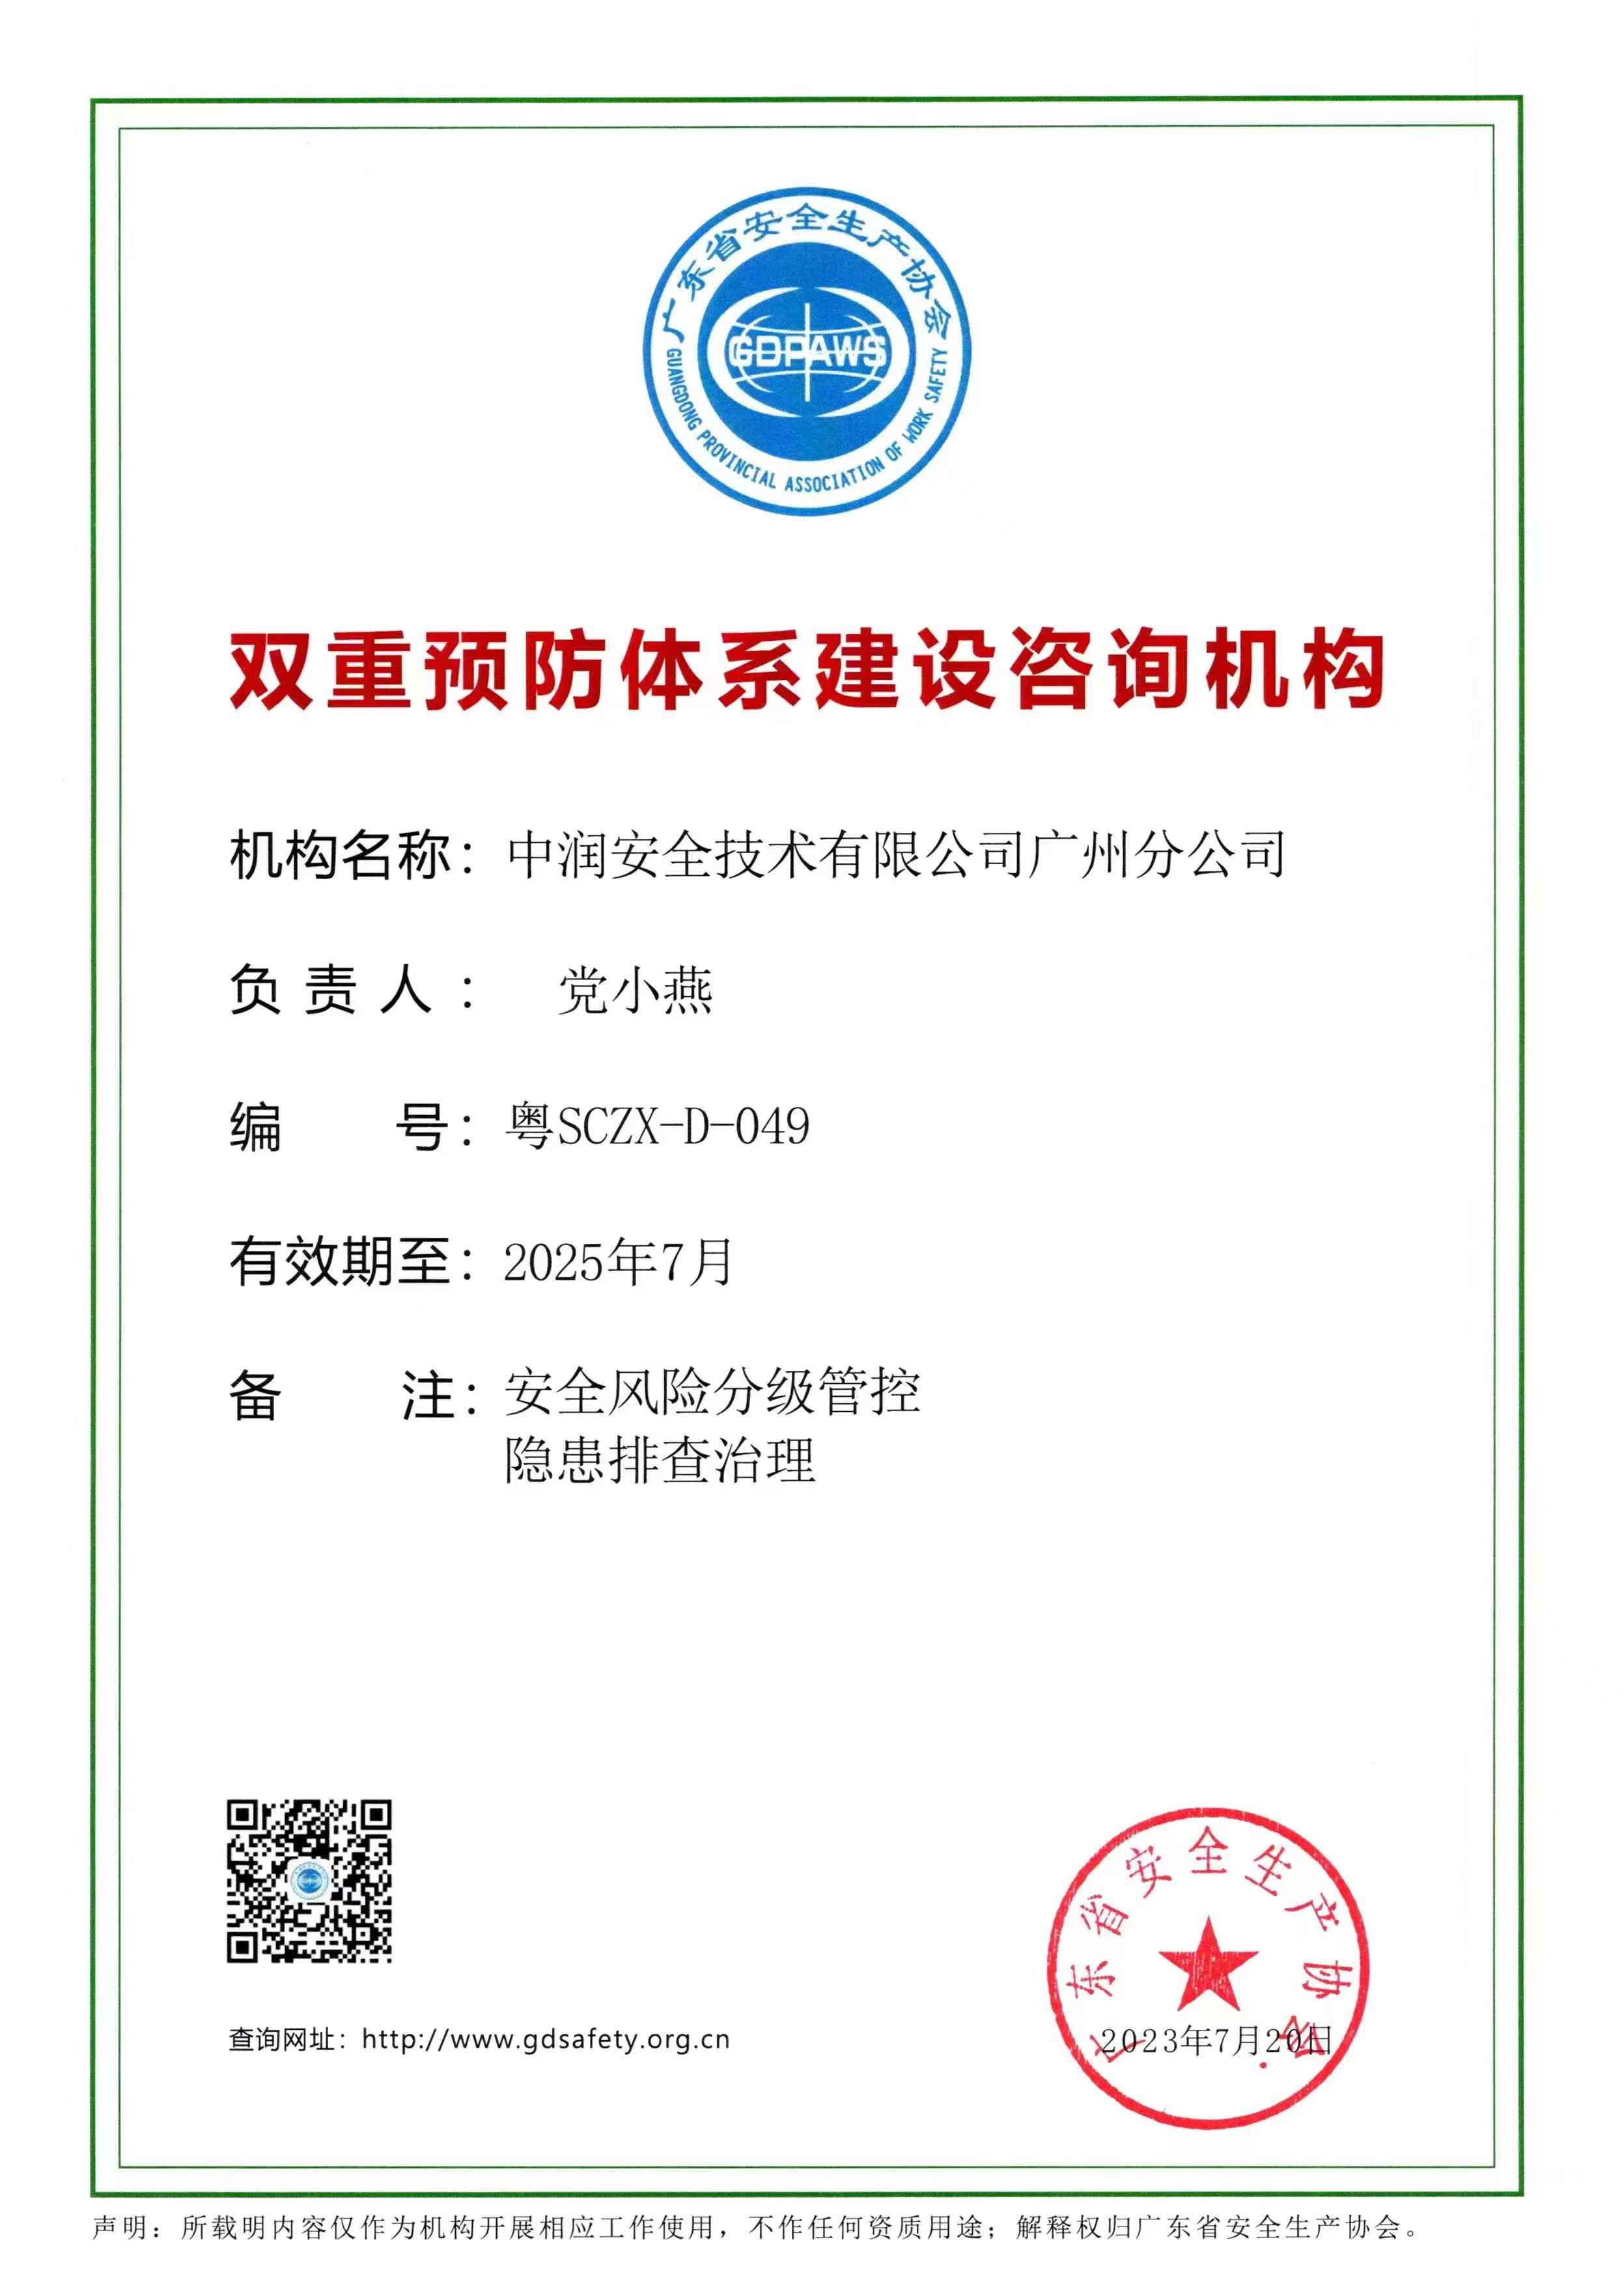 中润安全技术有限公司广州分公司-双重预防体系建设咨询机构